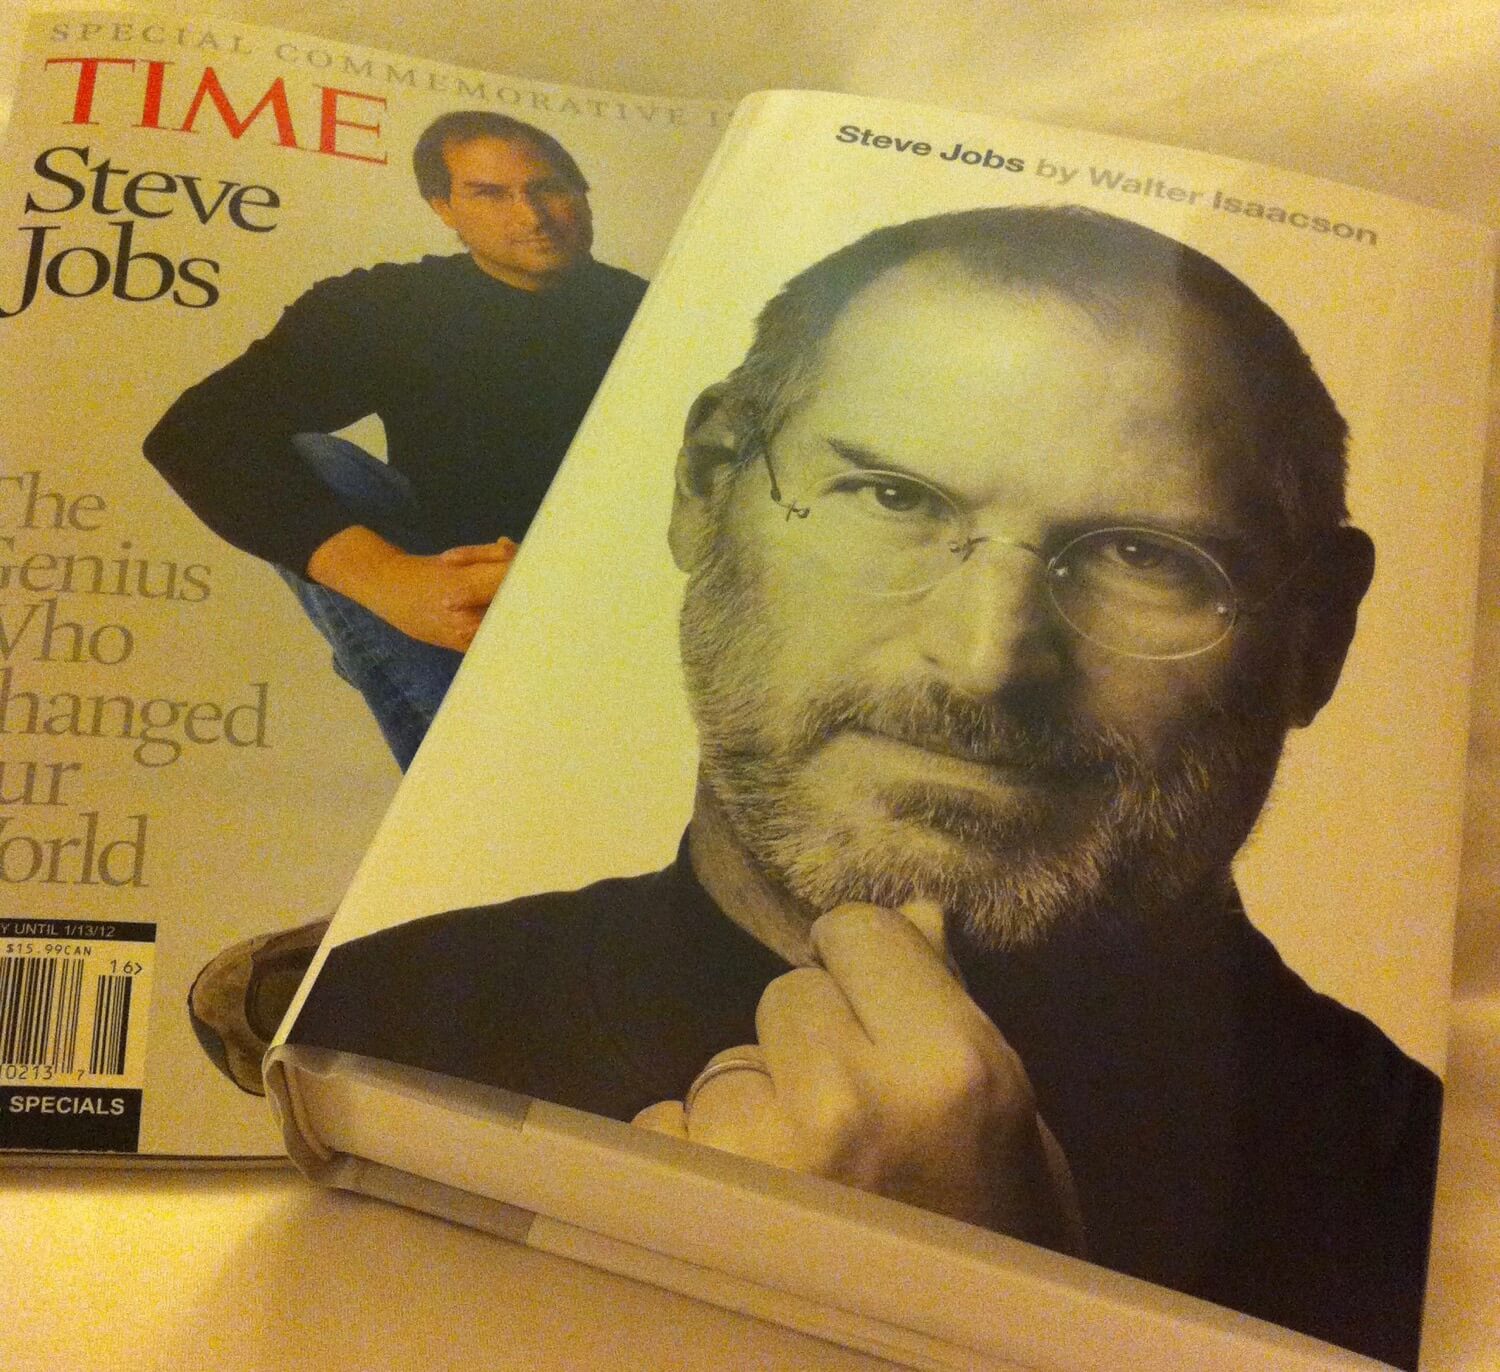 Focus like Steve Jobs